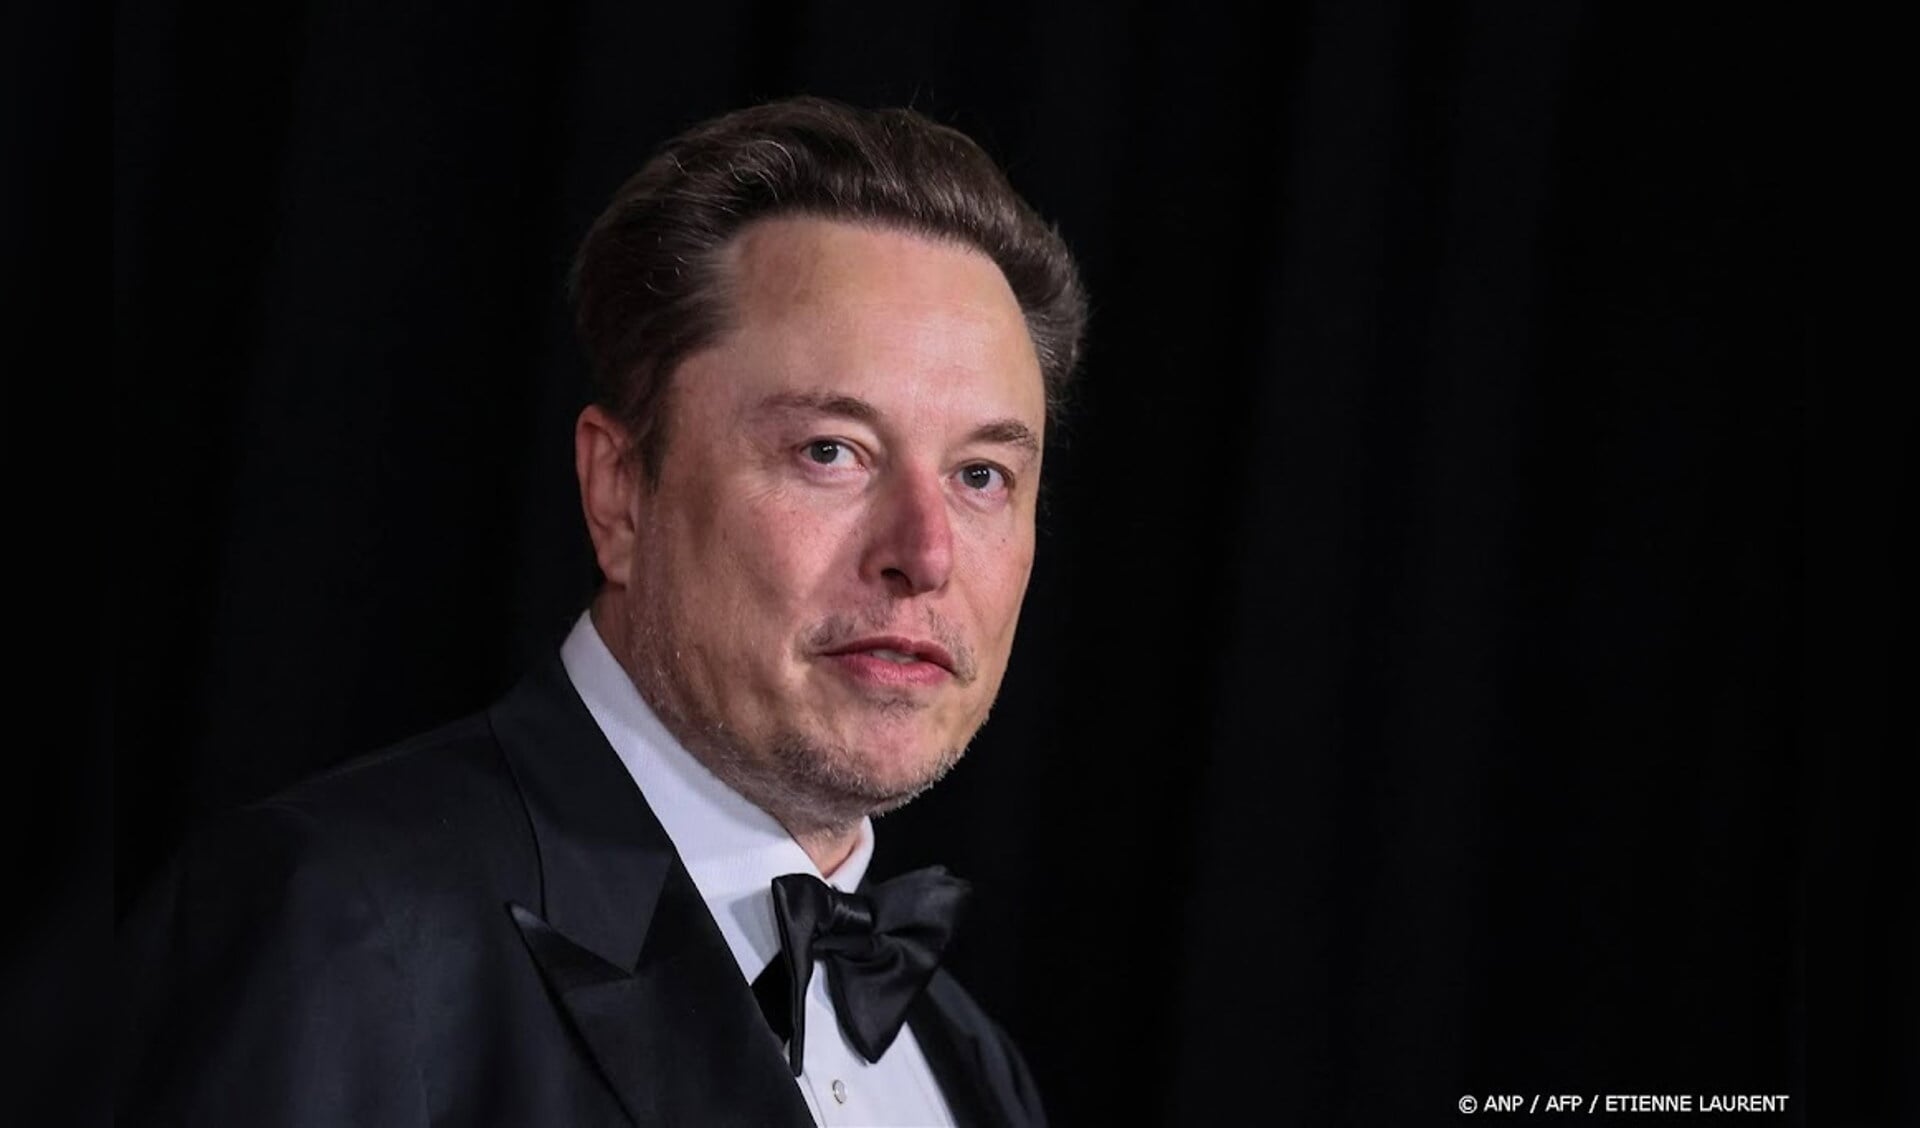 Die Positionen der deutschen AfD scheinen nicht rechtsextrem zu sein, sagt Elon Musk